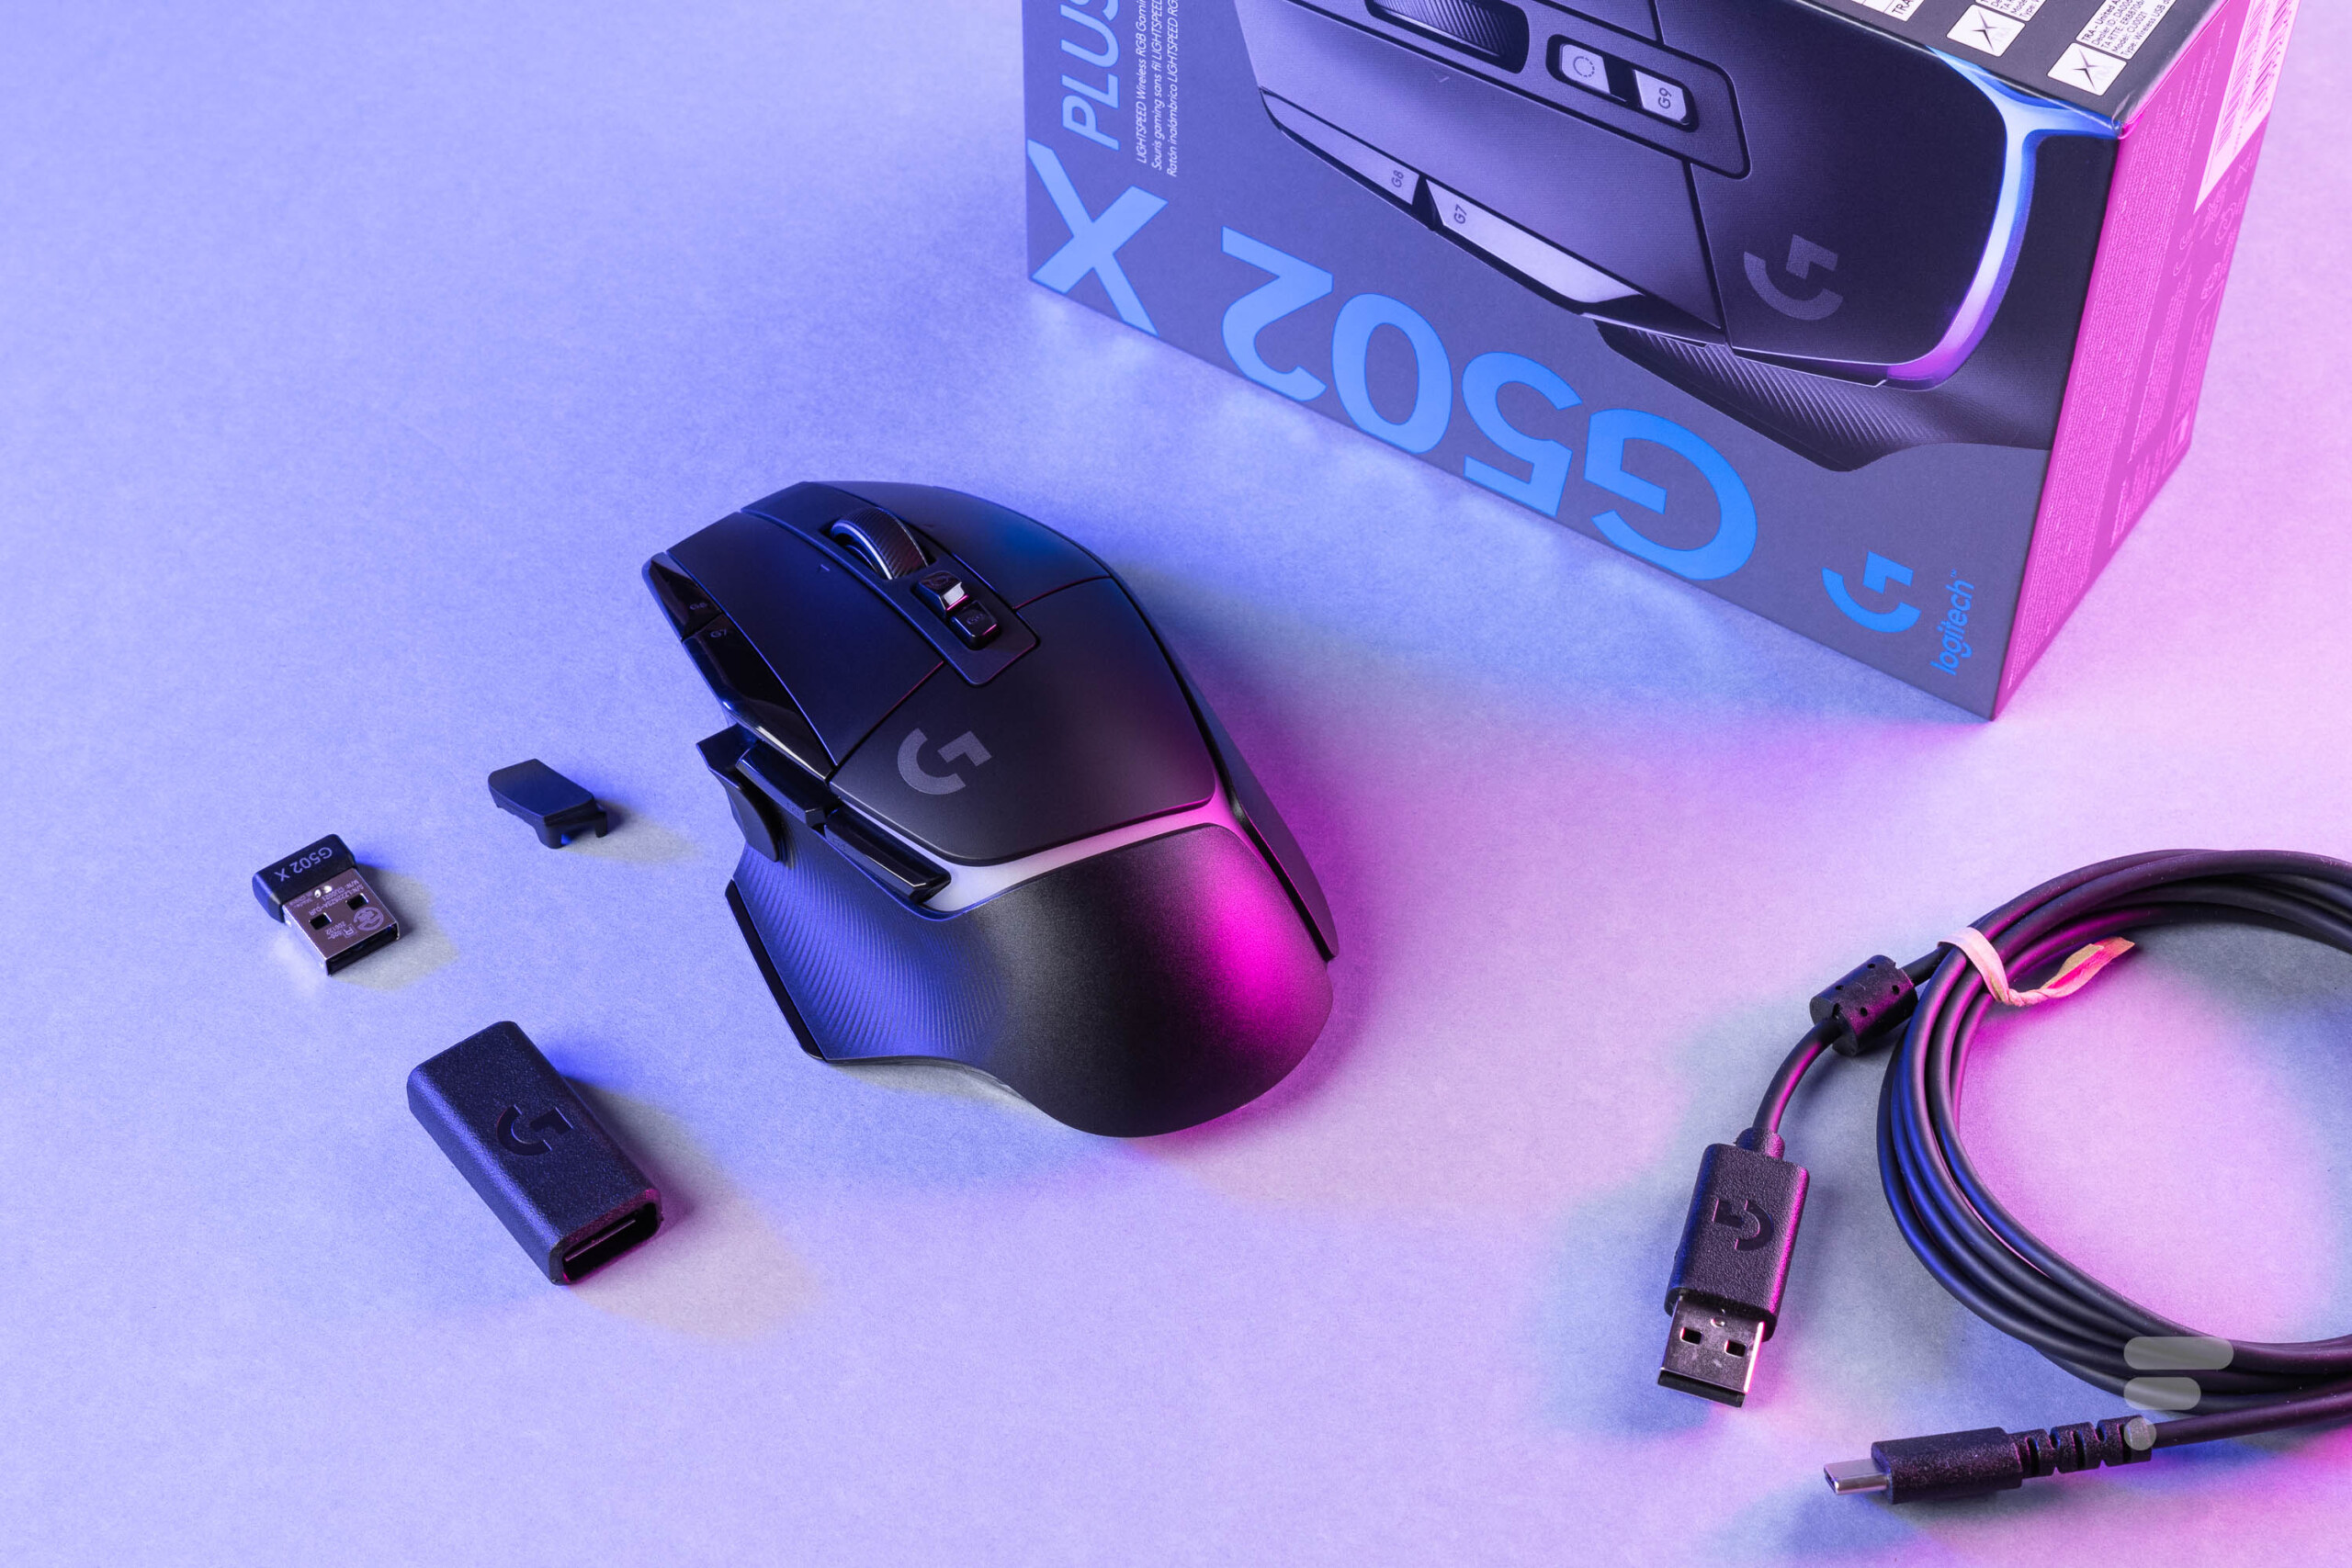 Acheter Logitech G502 X PLUS Souris gaming sans fil RGB - Souris prix promo  neuf et occasion pas cher